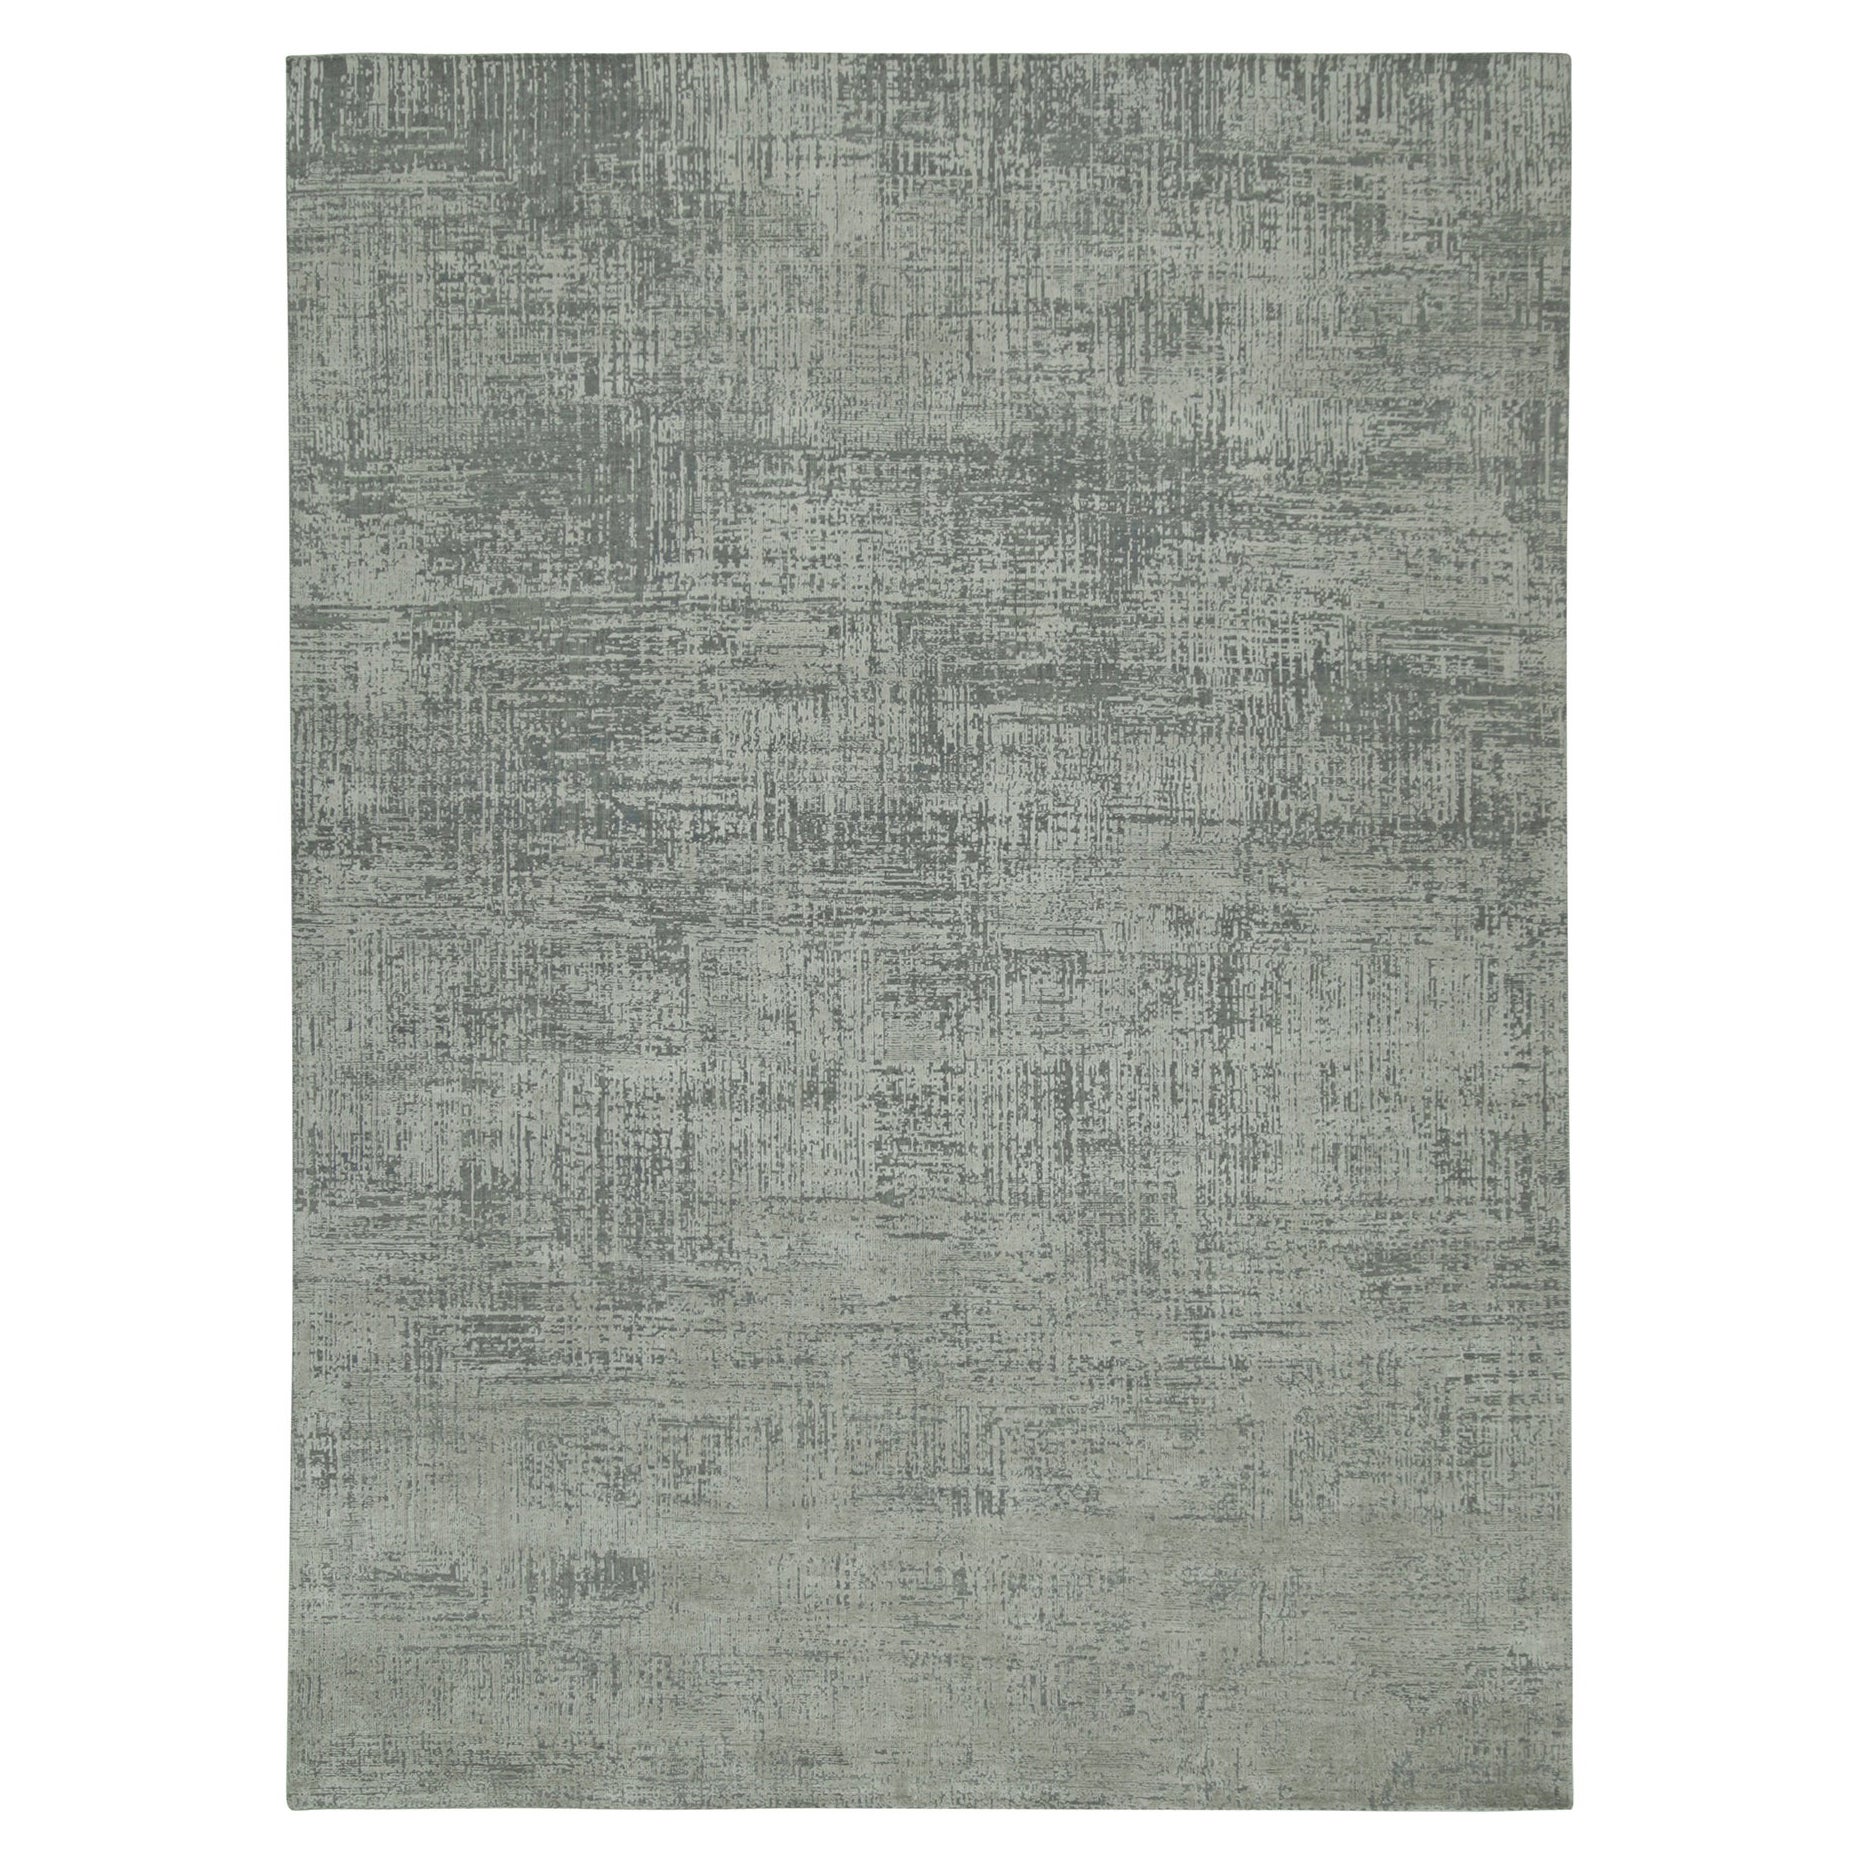 Rug & Kilim's Abstract Rug in Grey and Stone Blue Geometric Pattern (tapis abstrait à motifs géométriques gris et bleu pierre) en vente